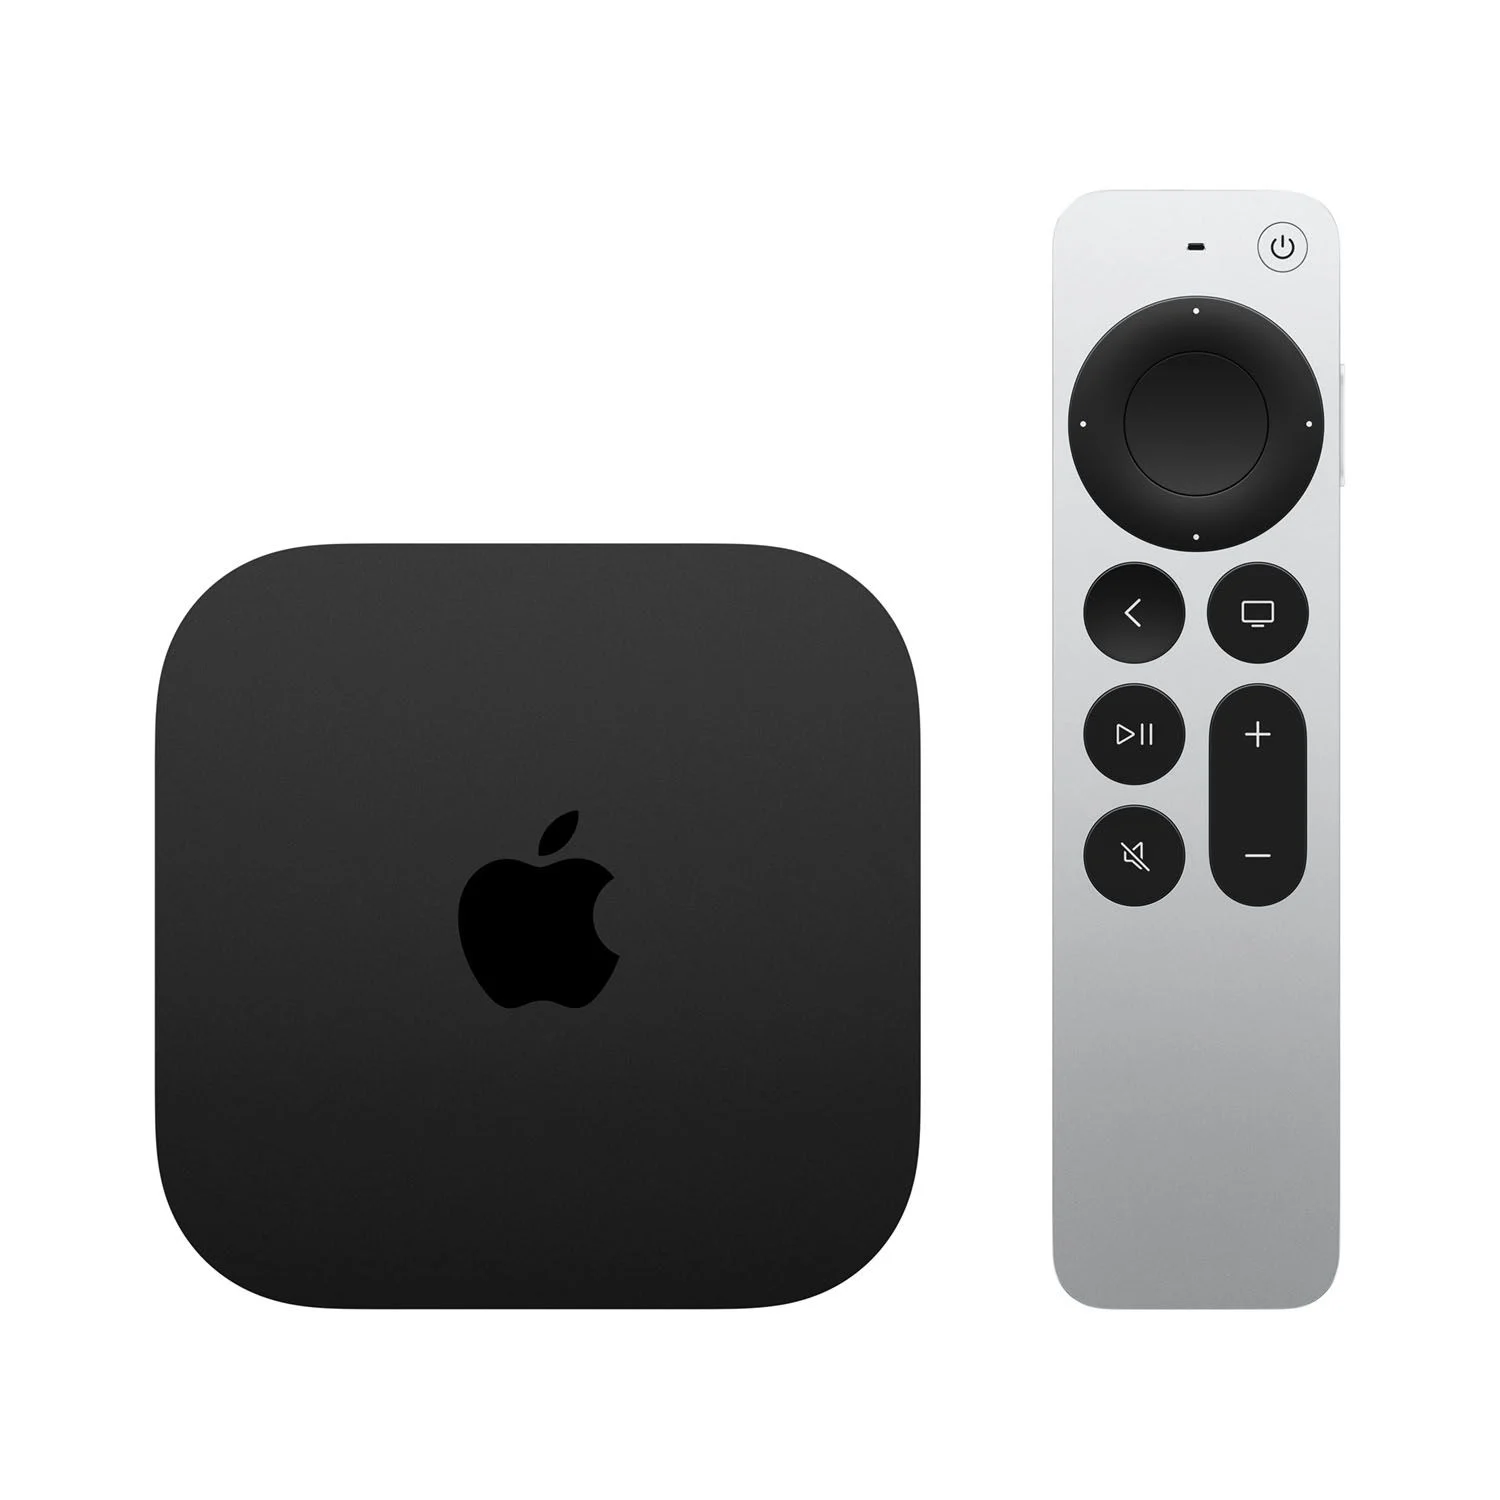 Apple TV 4K (3. Generation) - Siri Remote nicht enthalten